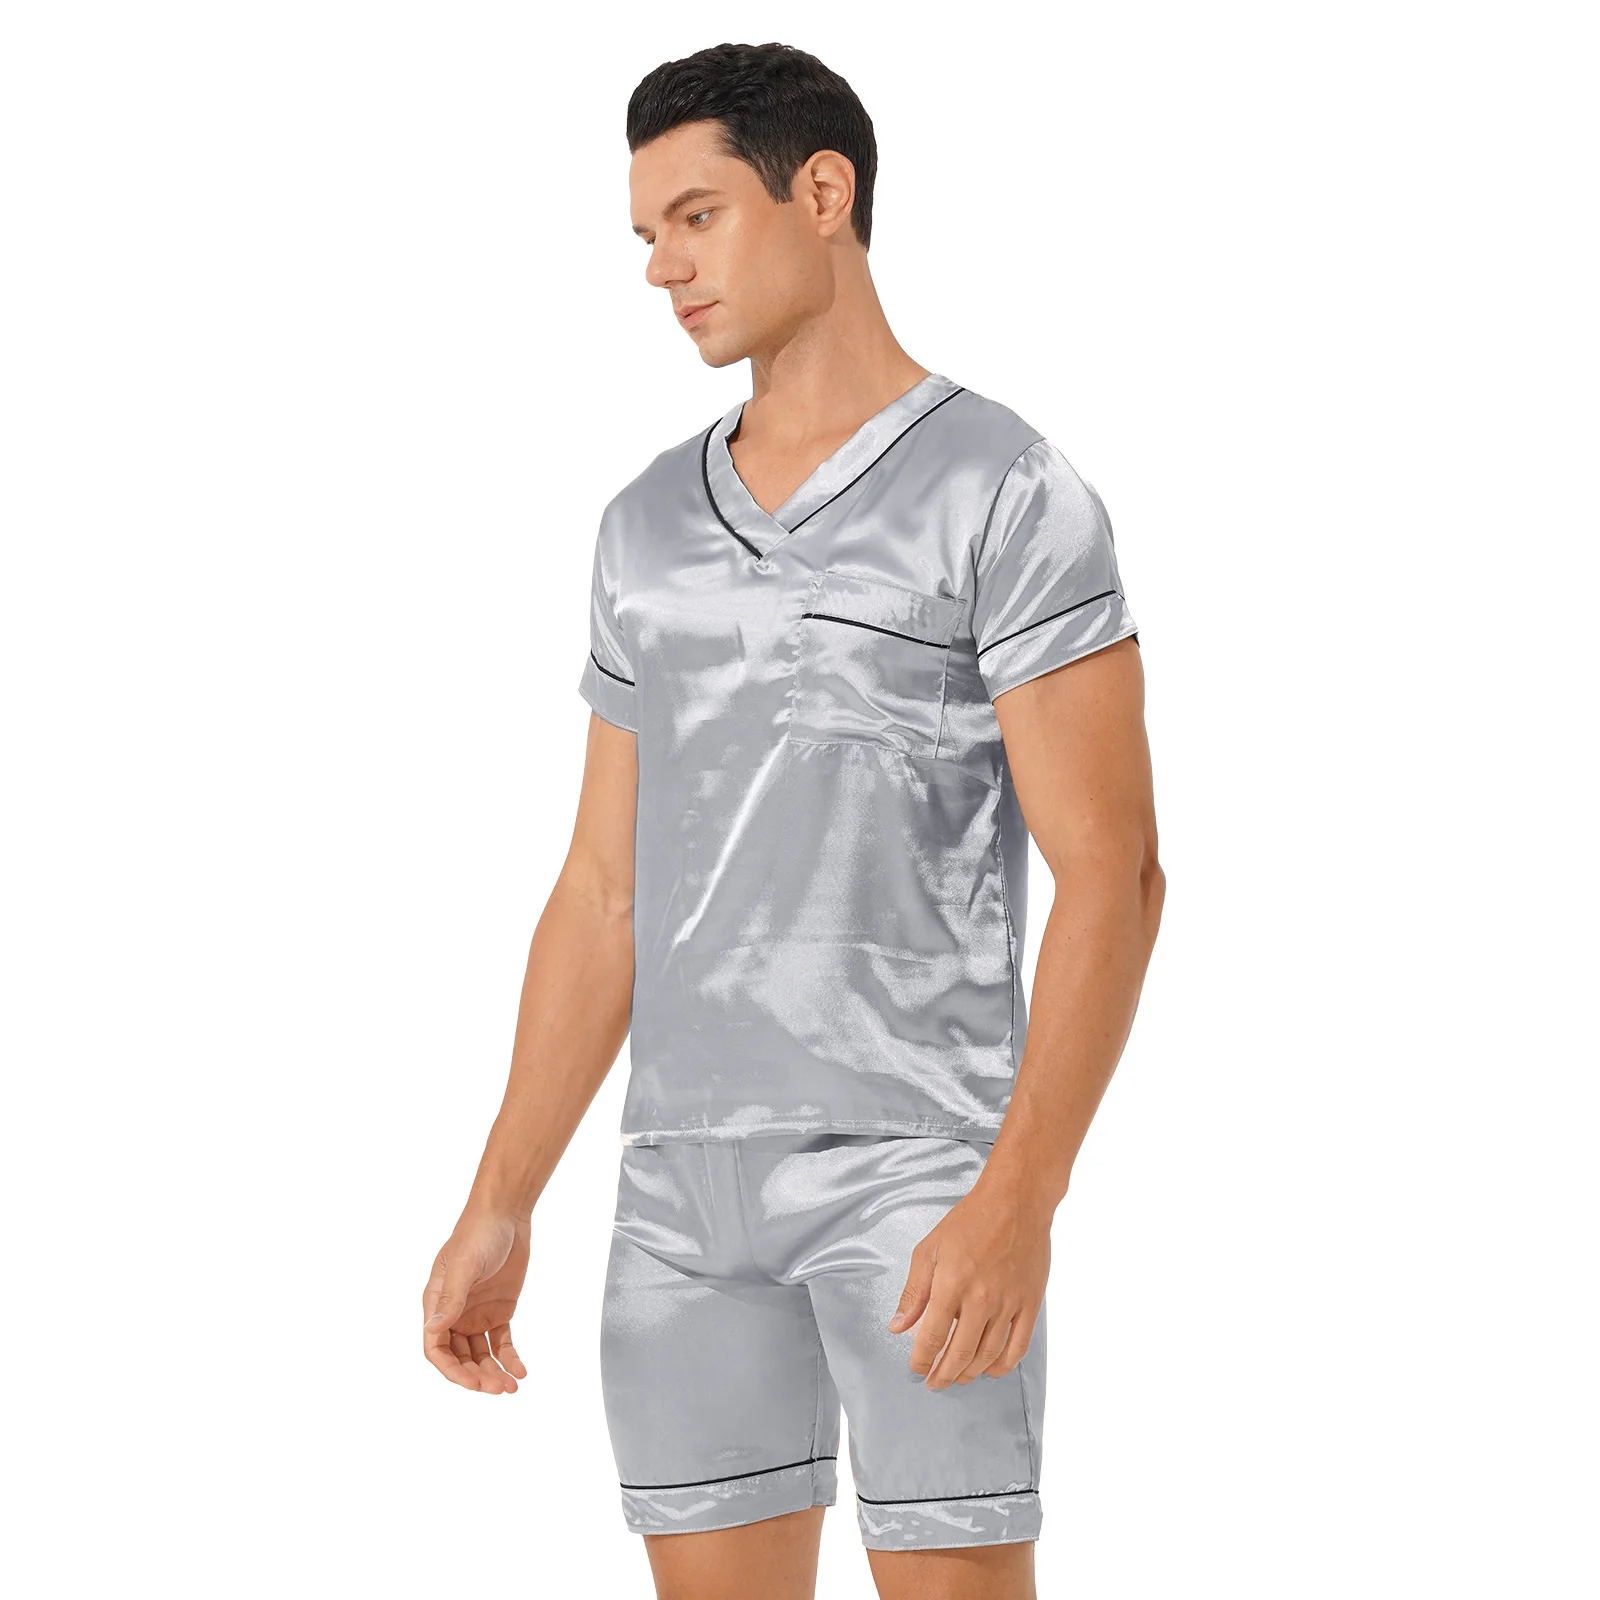 Plus Size Men Satin Pajama Set Loungewear Homewear Sleepwear Nightwear Comfortable Loose V Neck Short Sleeve T-Shirt with Shorts men satin pajamas